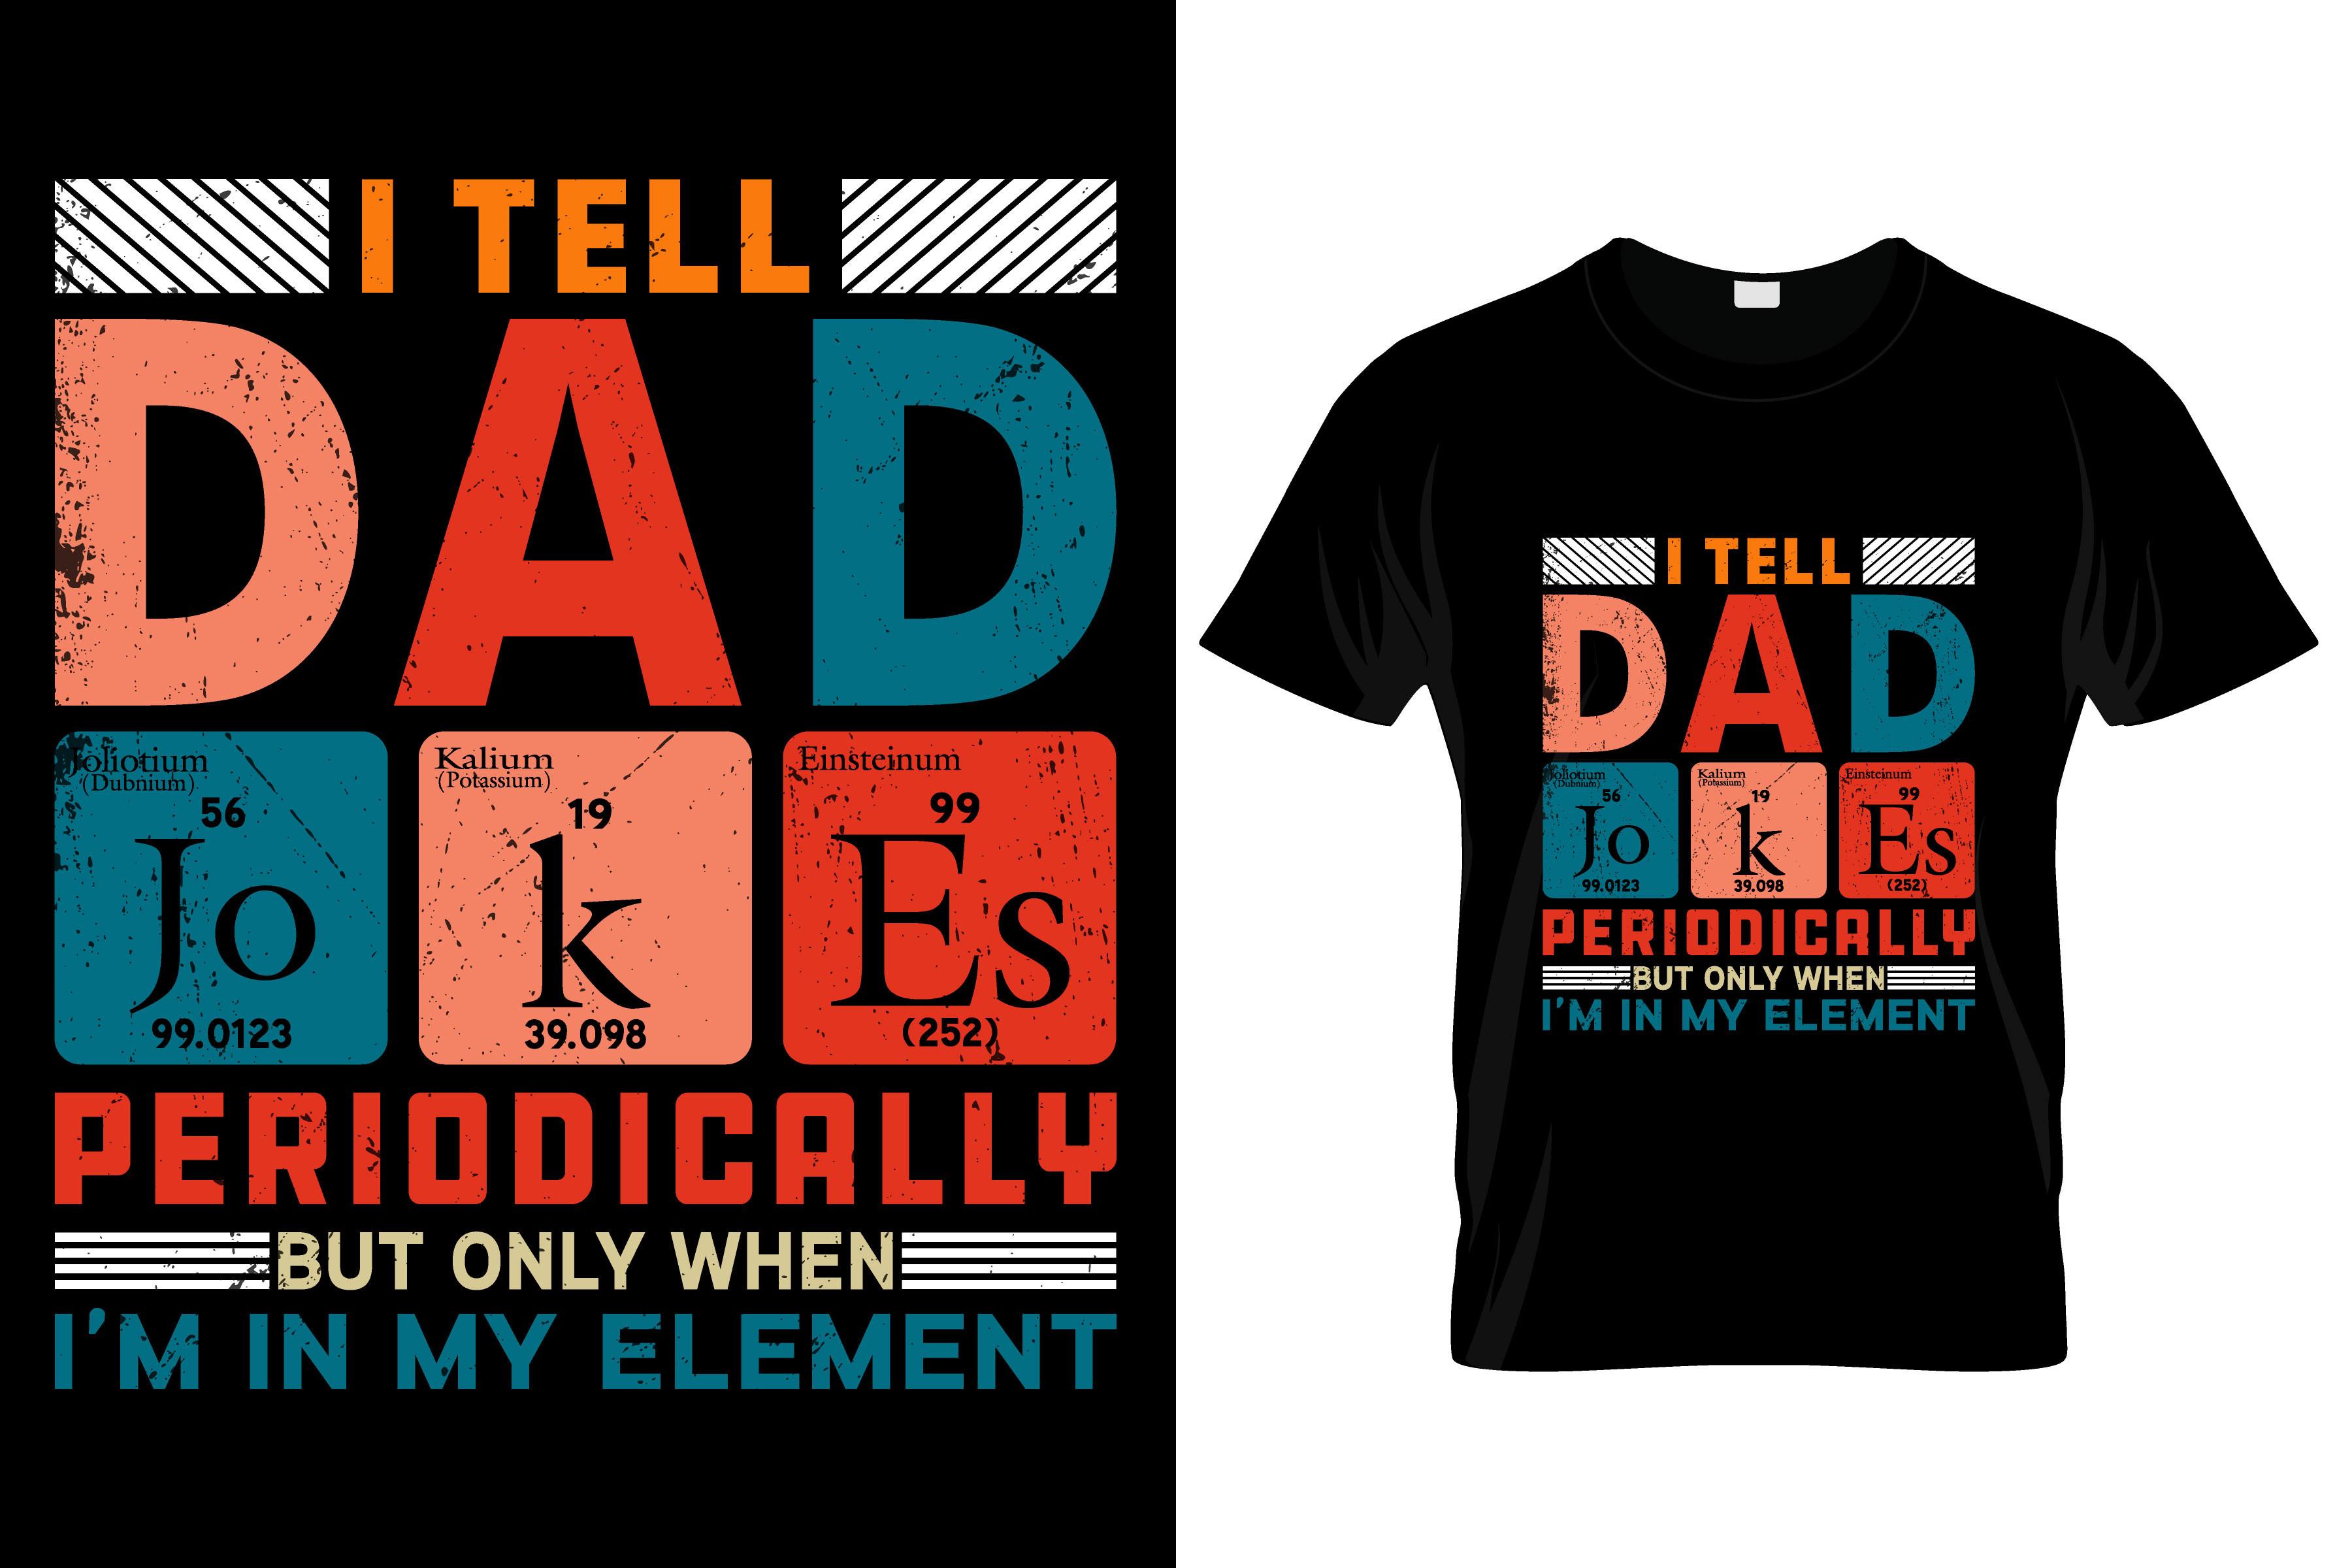 I Tell Dad Jokes Periodically... T-shirt